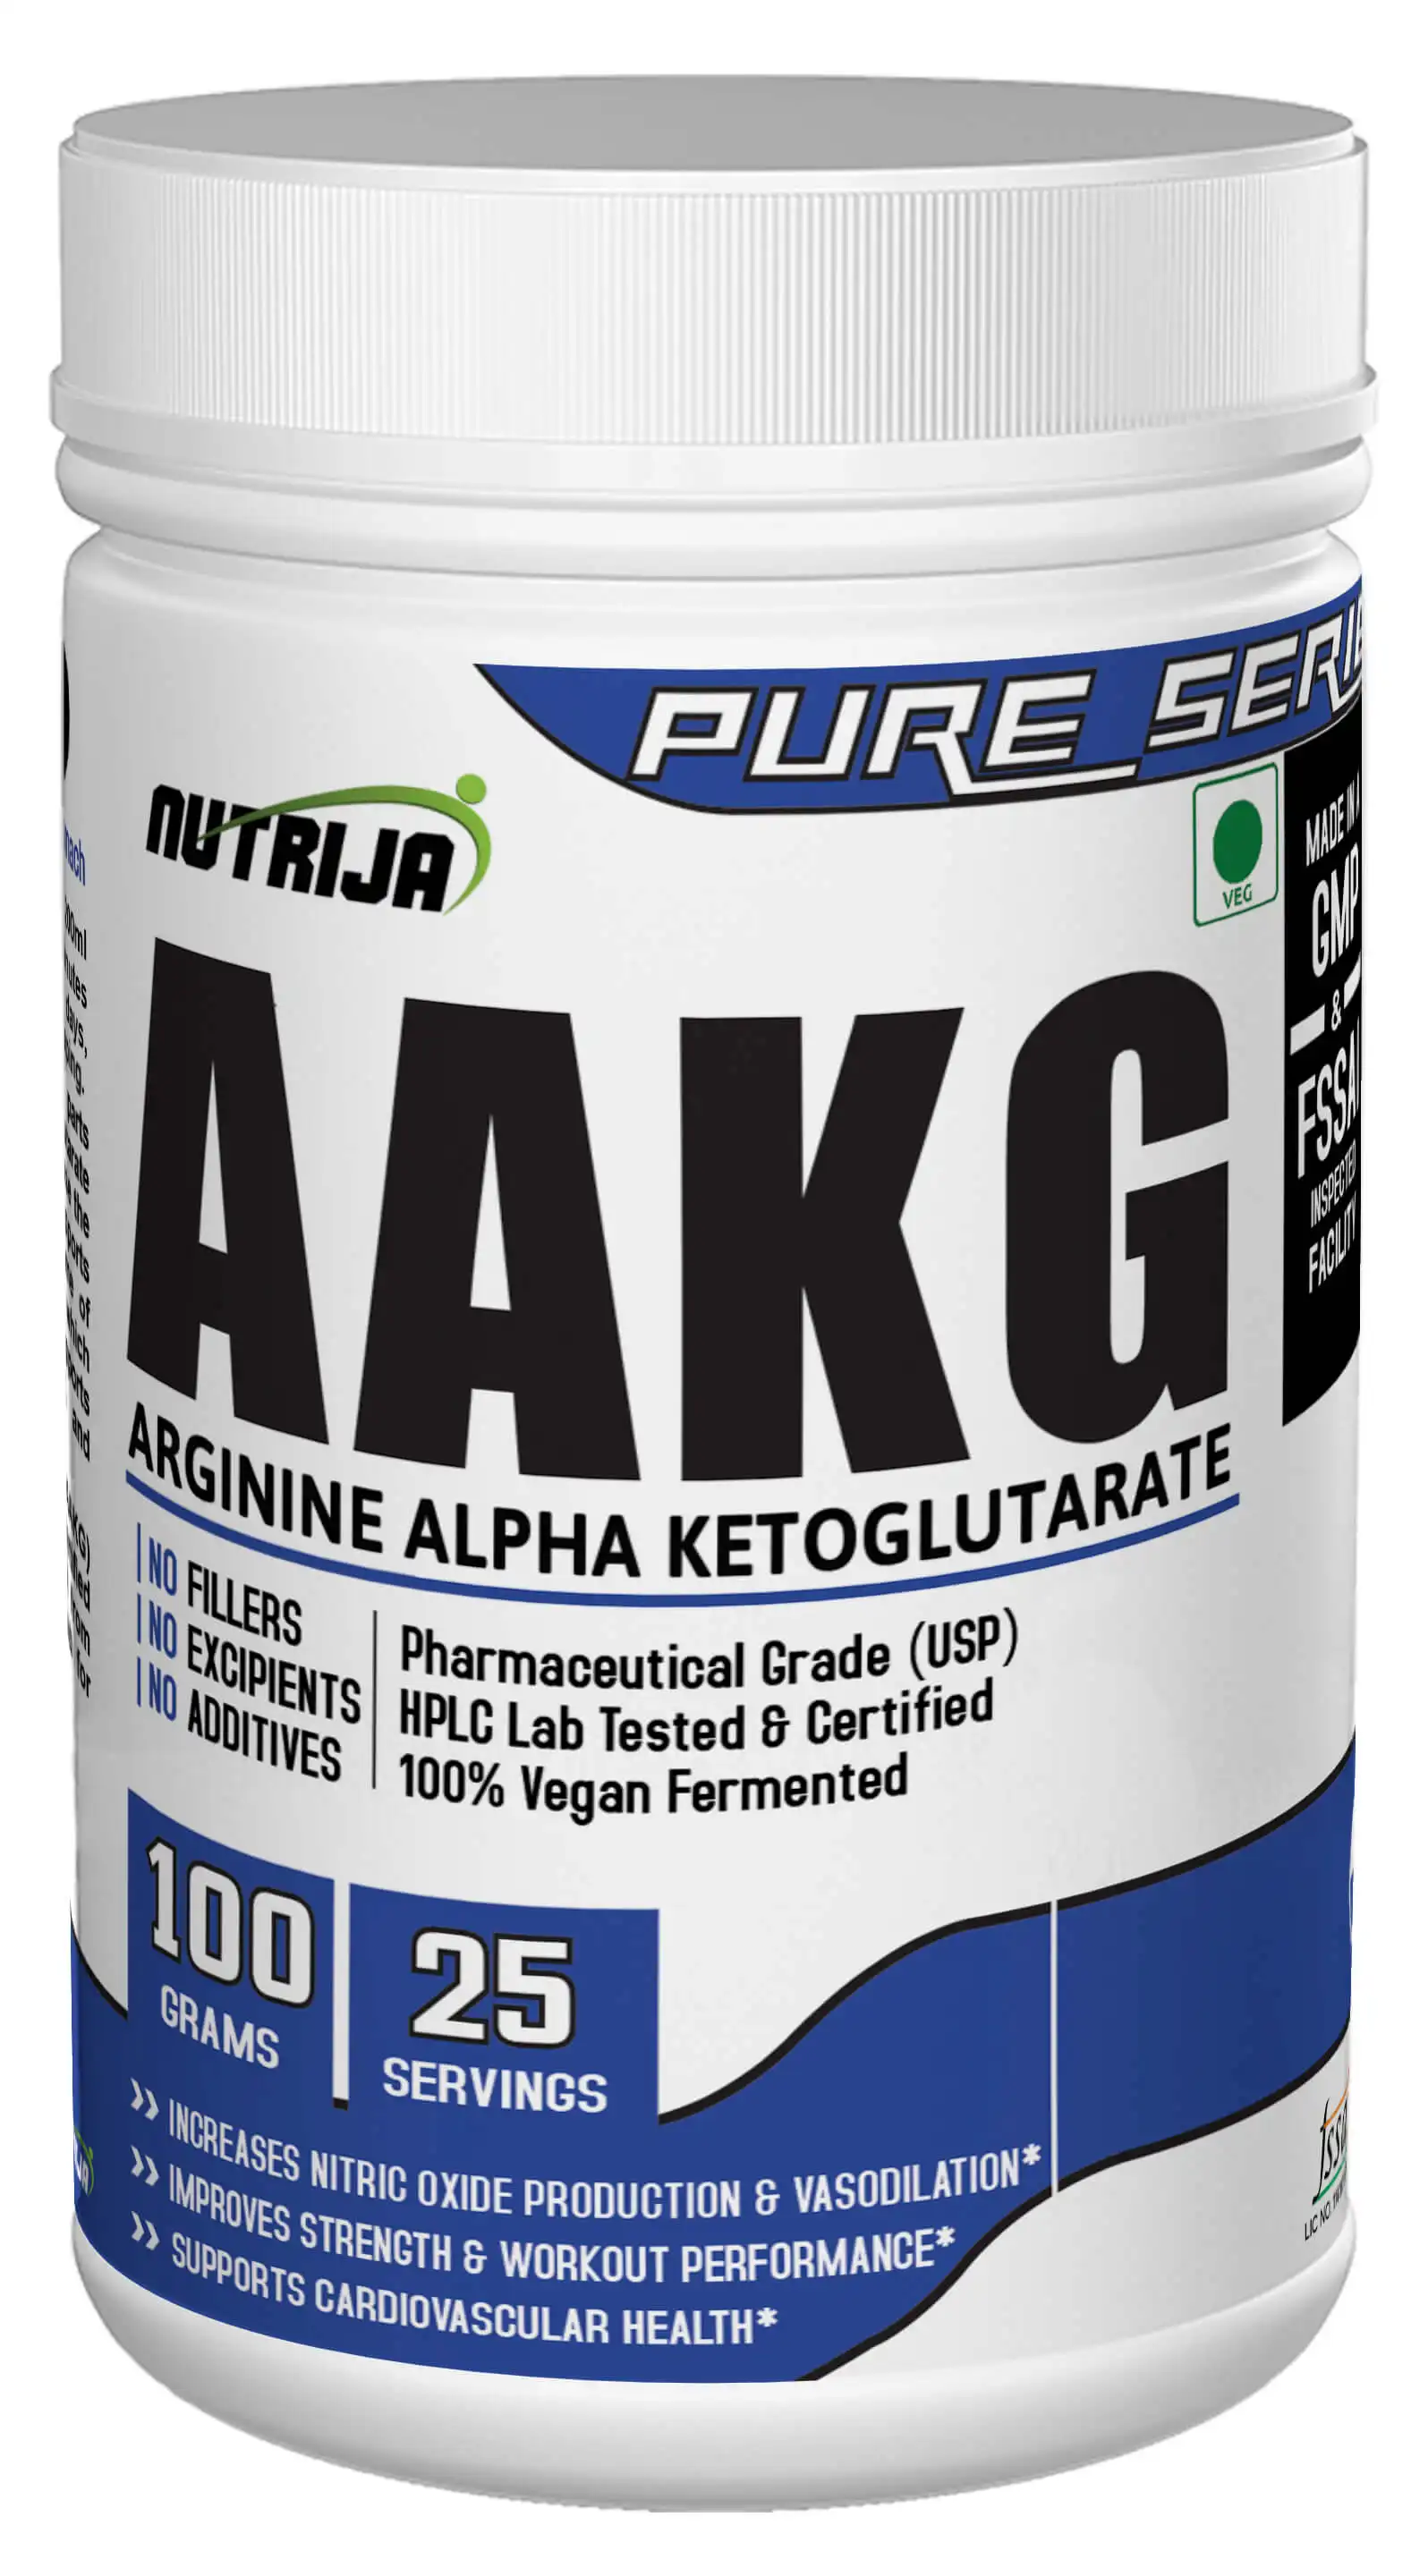 AAKG-аргинин альфа-кетоглутарат для силы и сосудистой системы-100 грамм